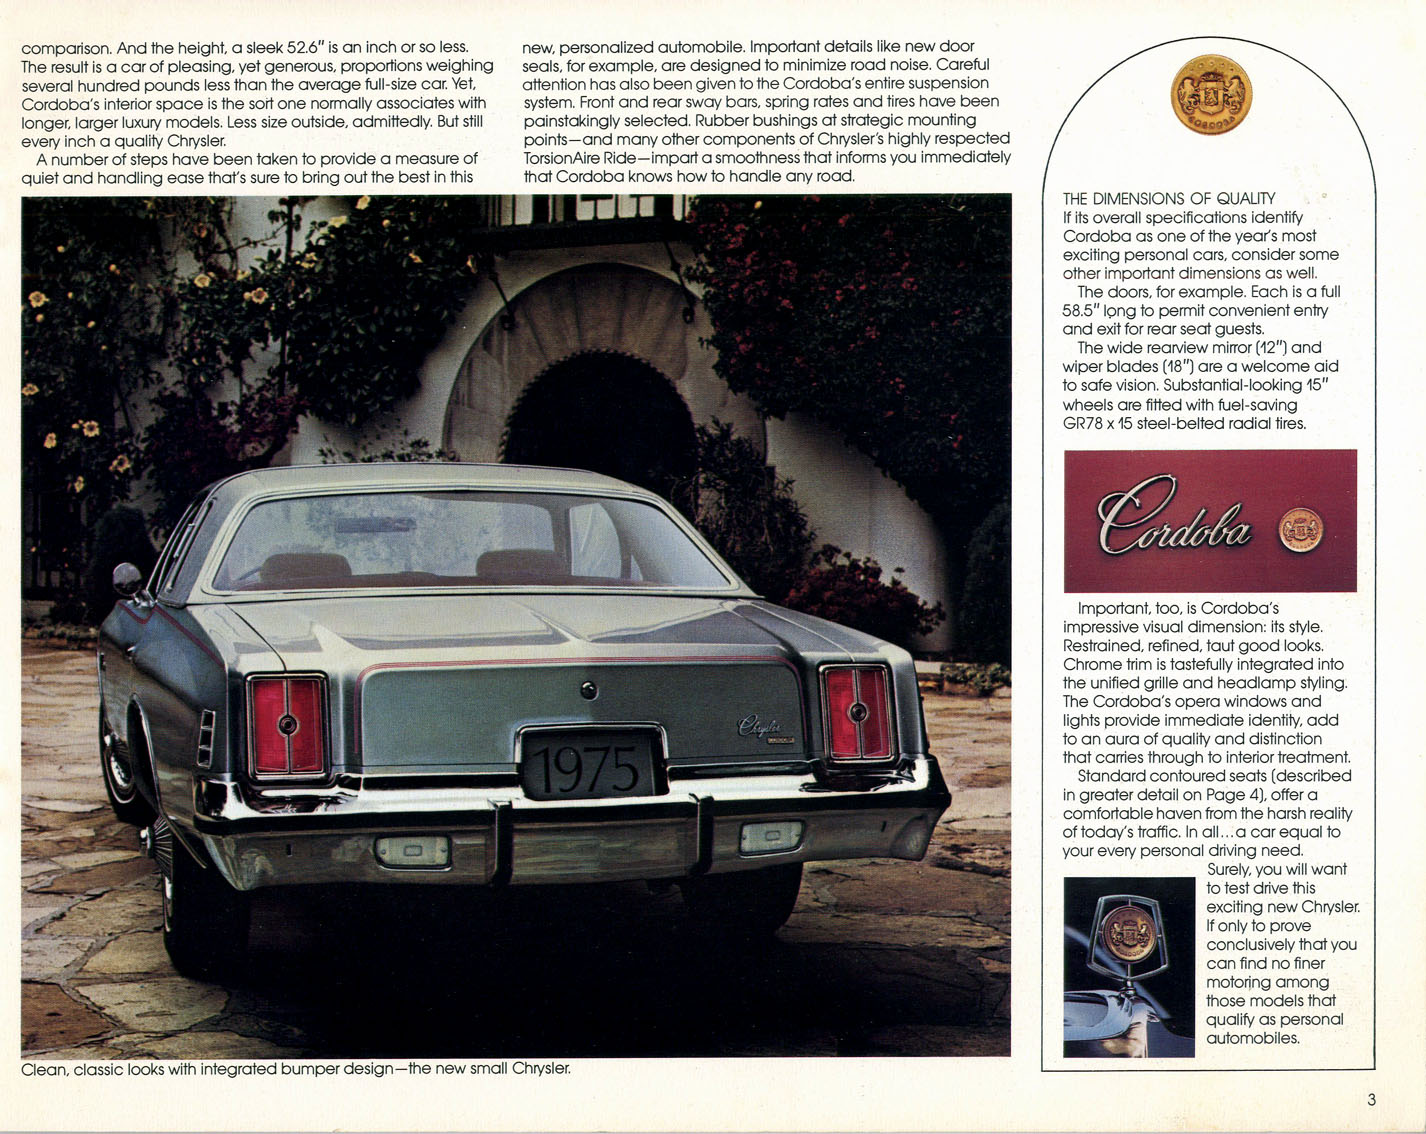 1975 Chrysler Cordoba Brochure Page 3